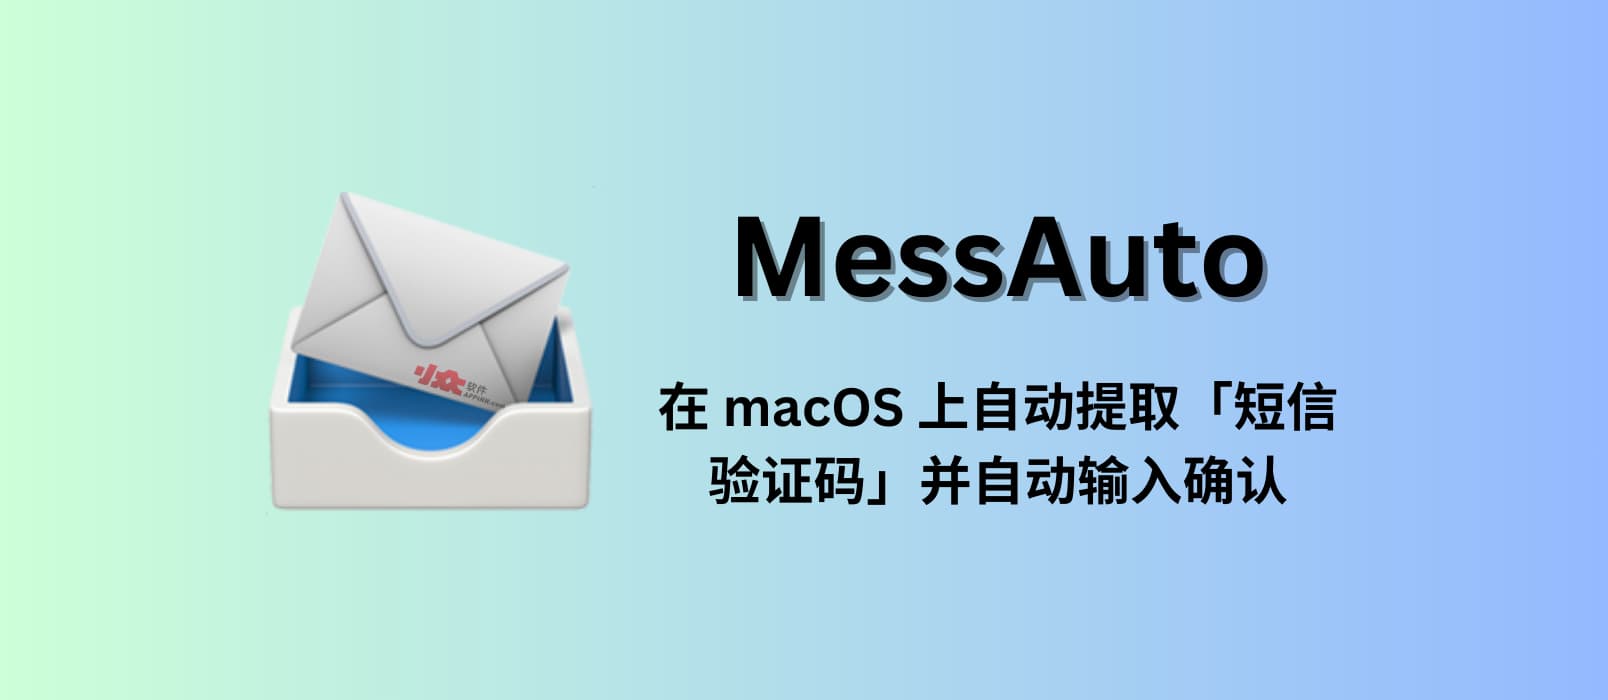 MessAuto - 在 macOS 上自动提取「短信验证码」并自动输入的工具